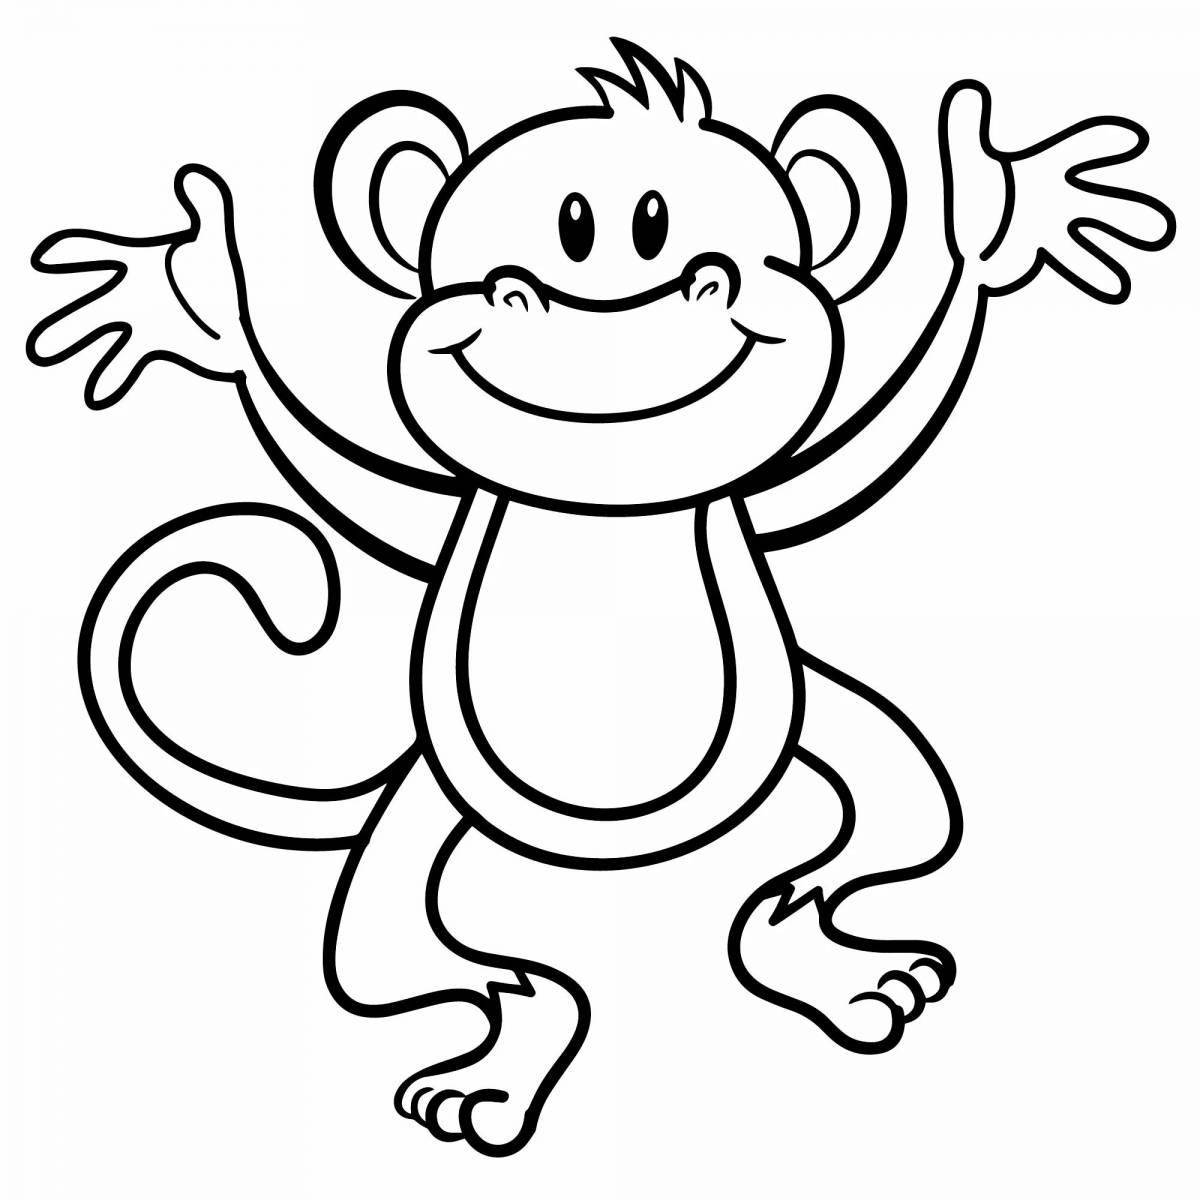 Сладкий рисунок обезьяны для детей